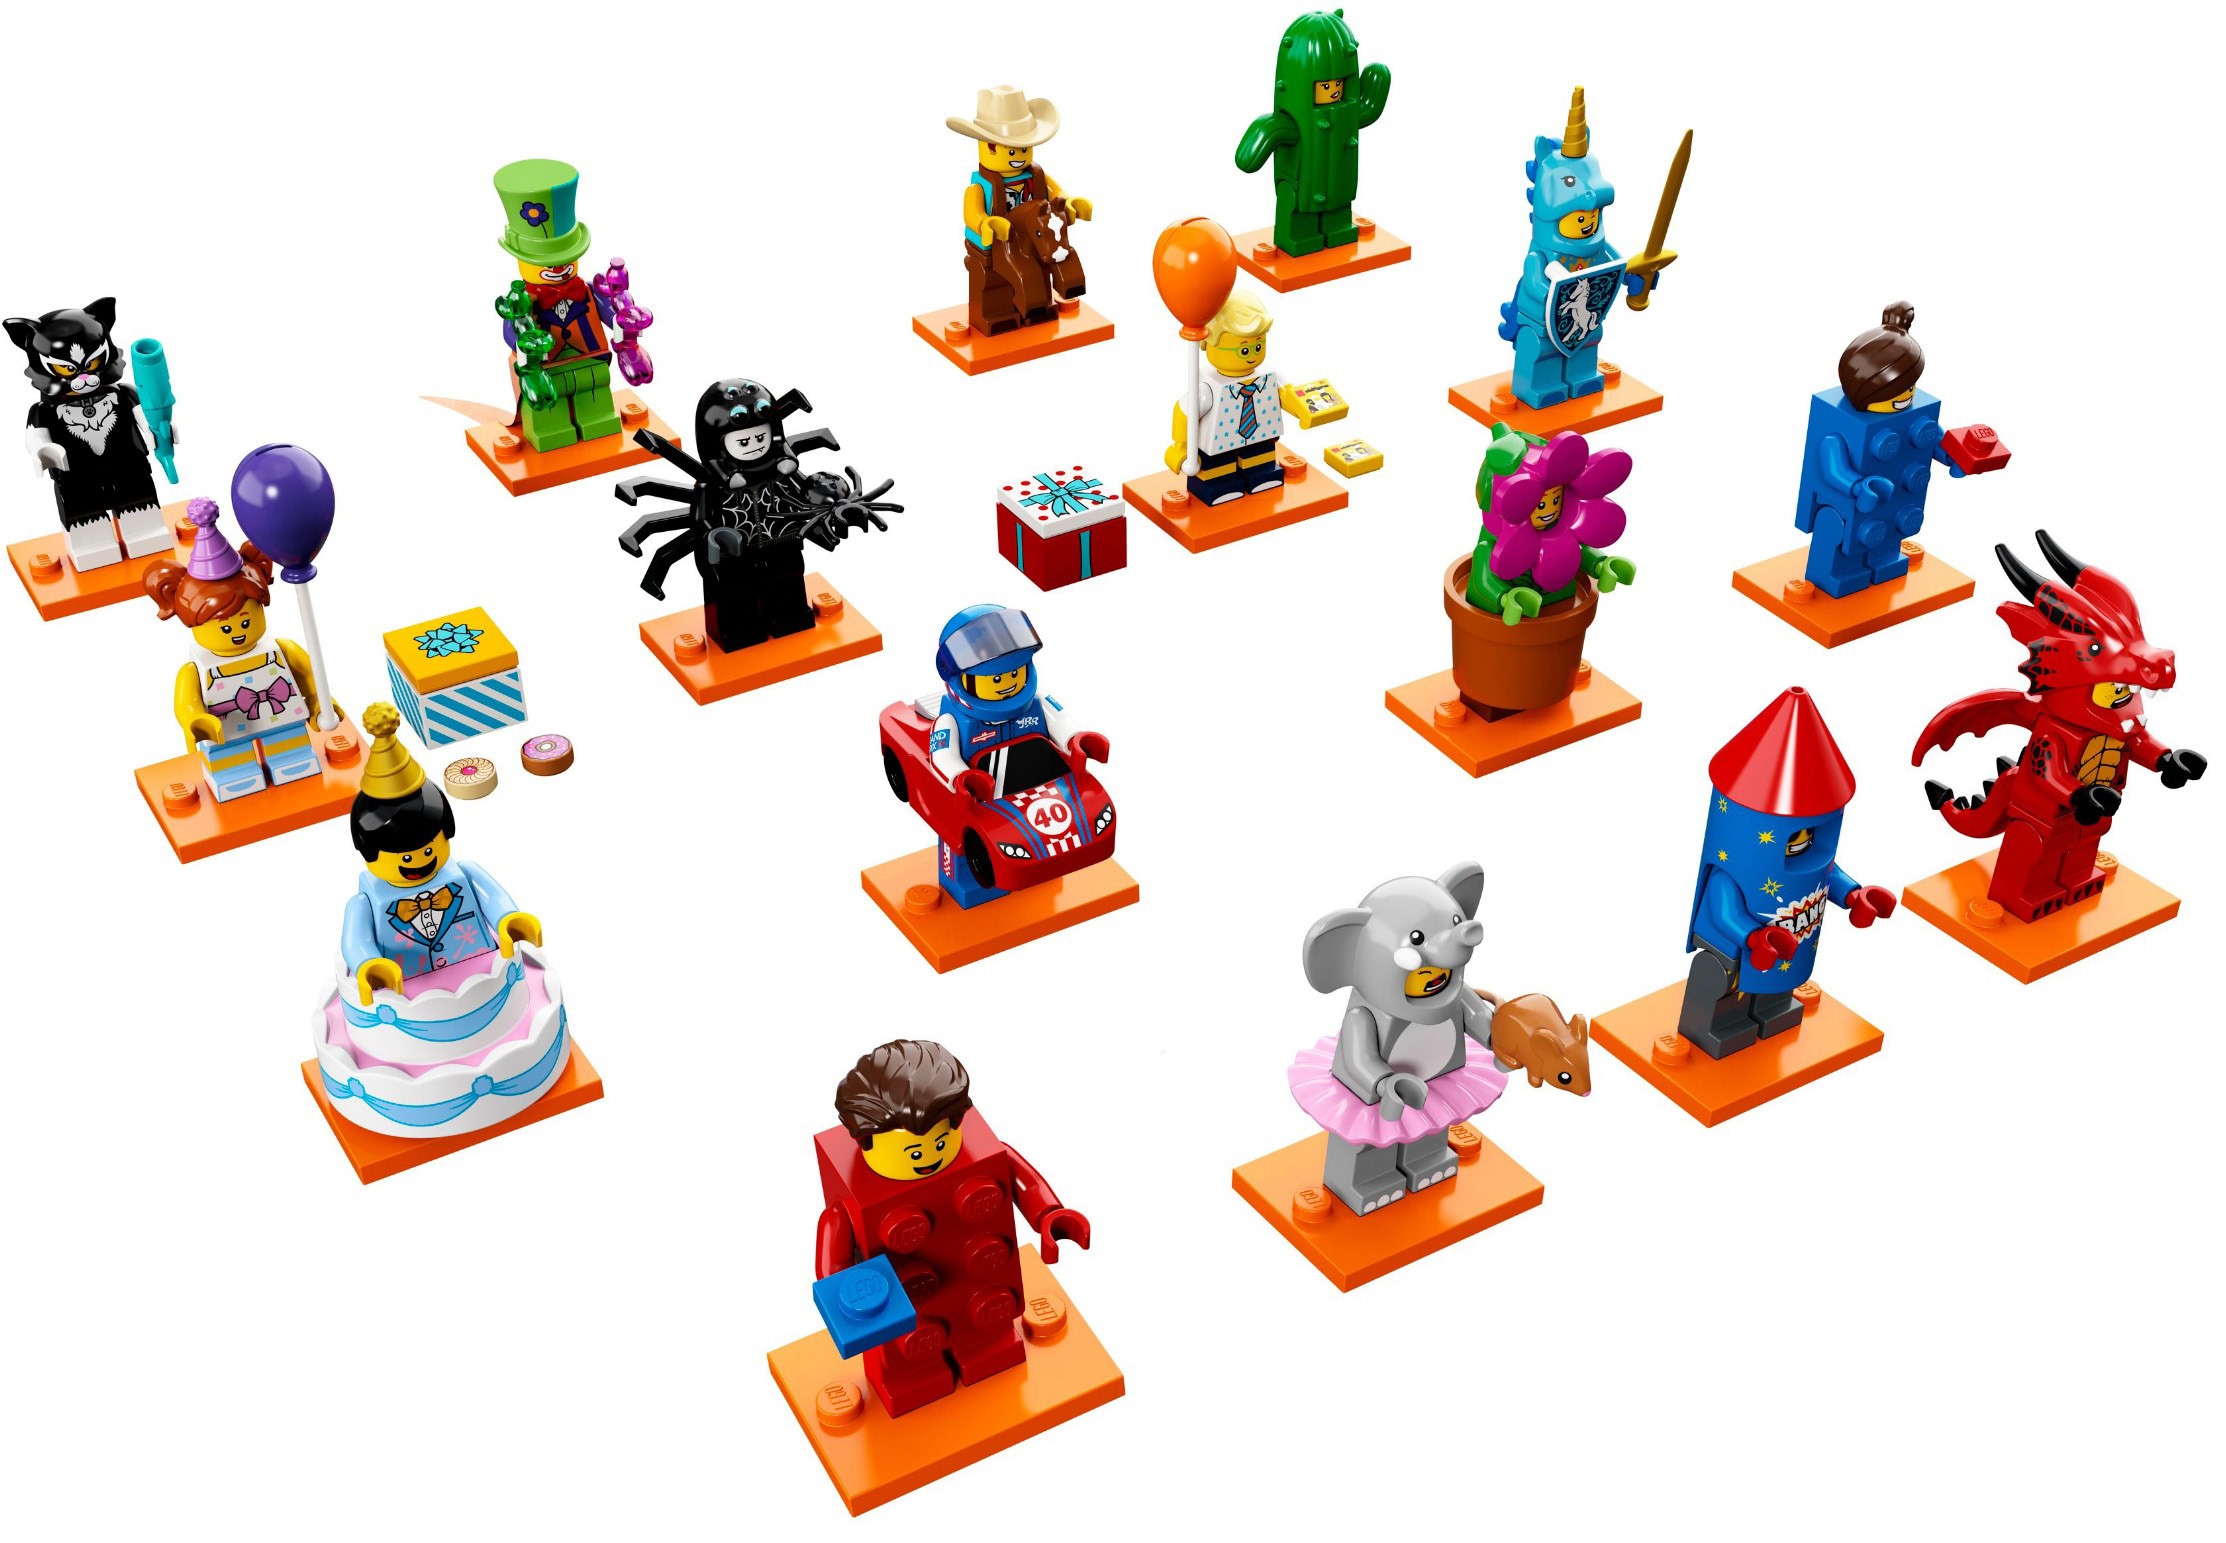 LEGO Series 18 Minifigures on sale